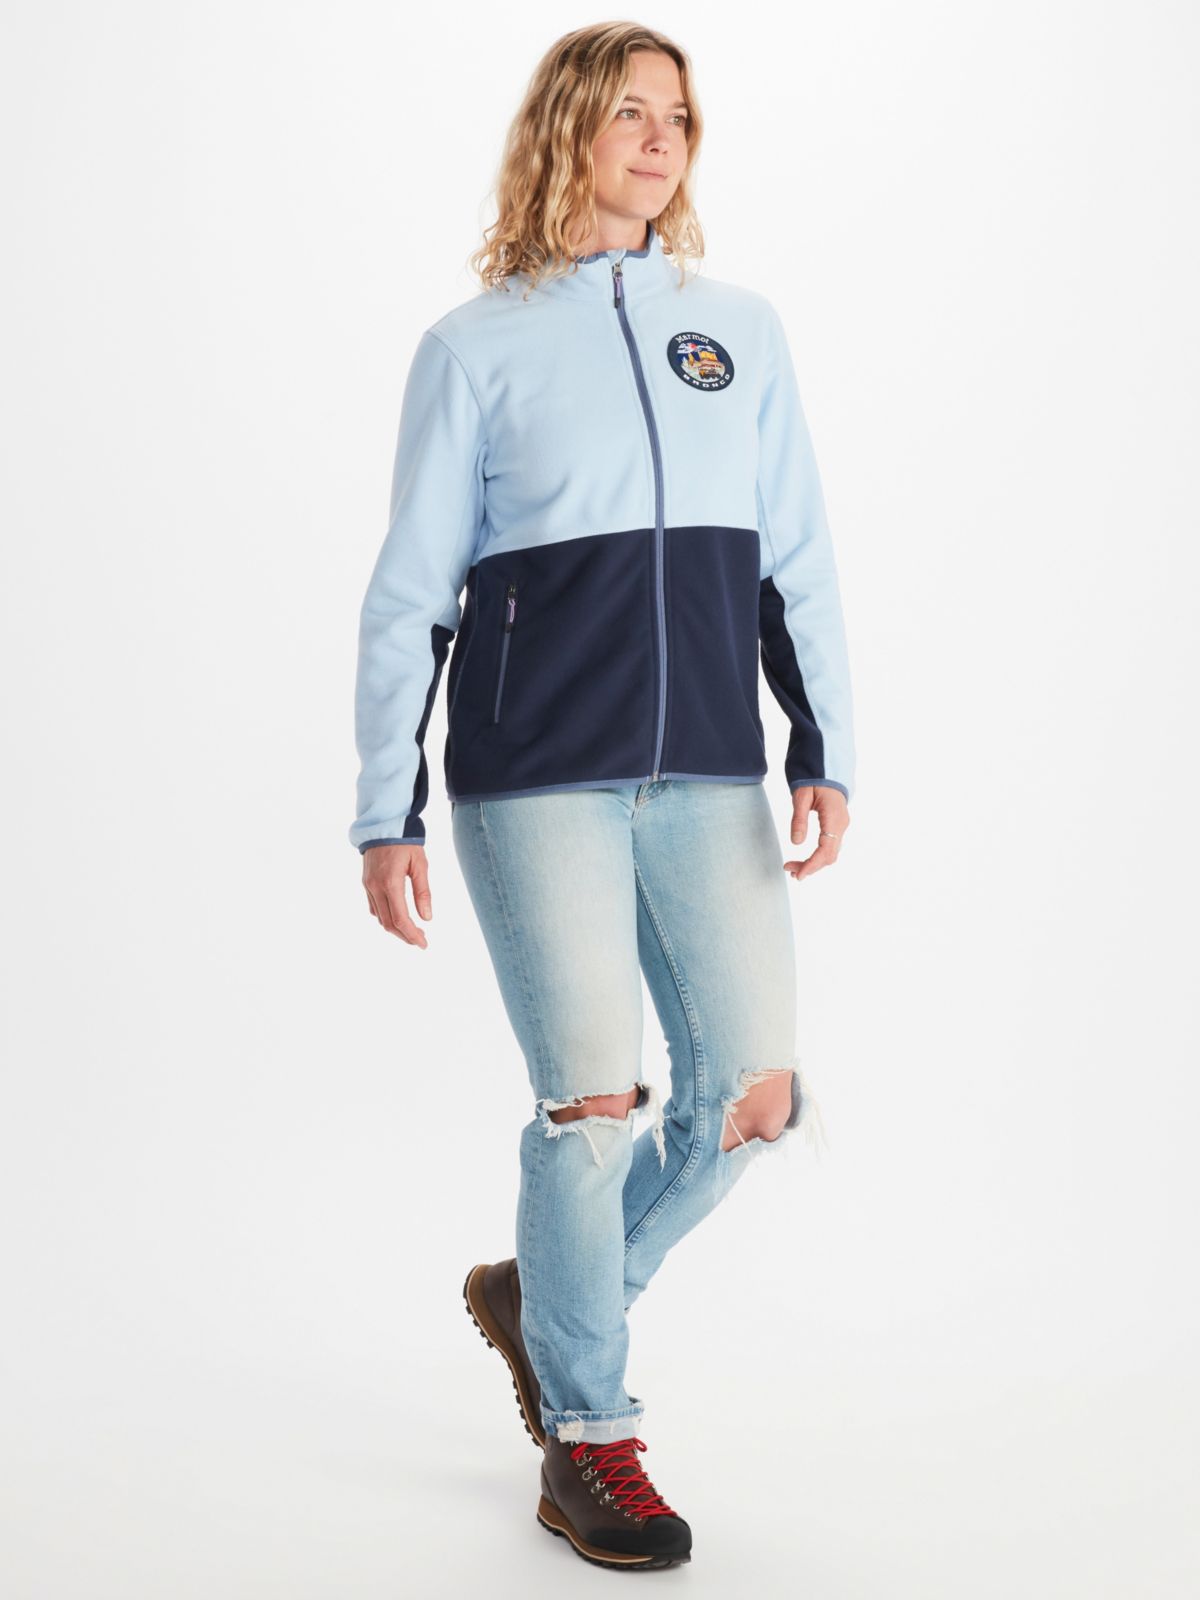 Women's Marmot x Bronco Rocklin Full-Zip Fleece Jacket